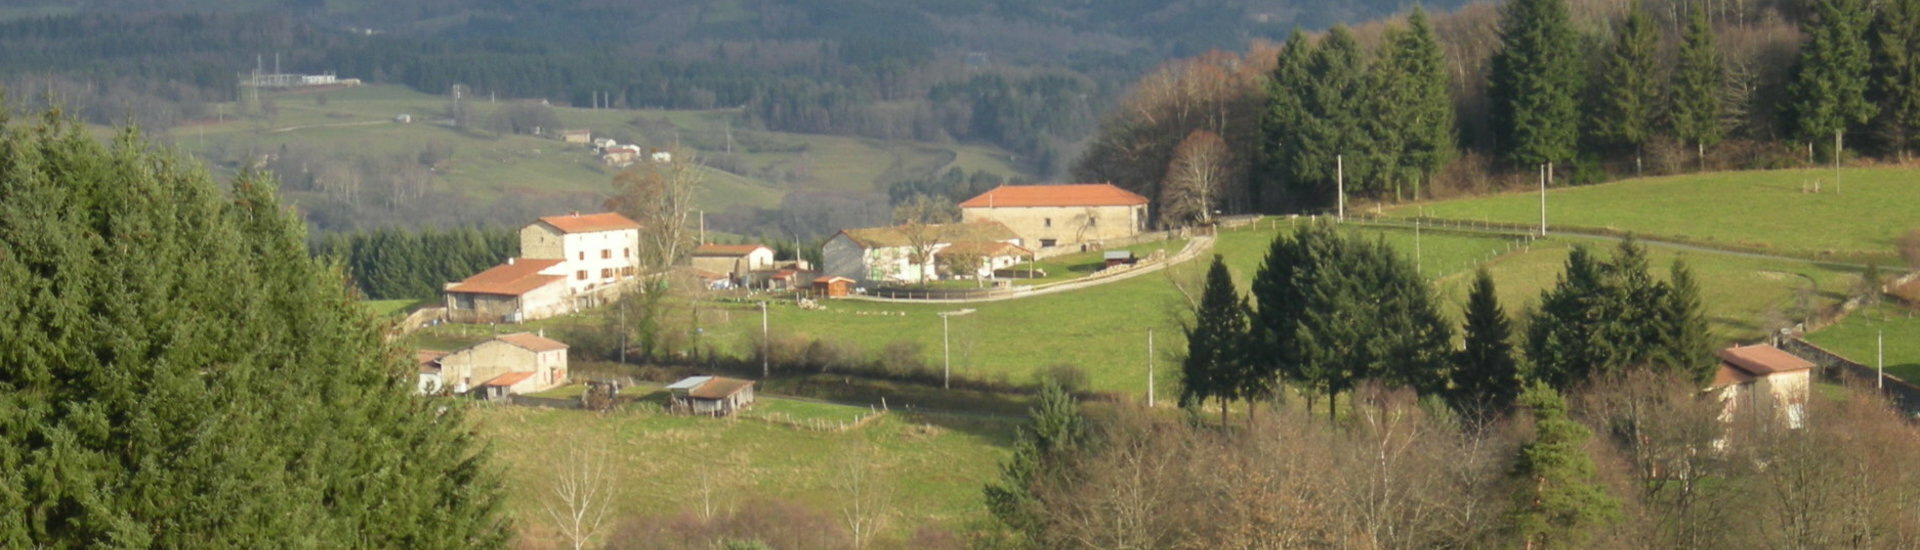 Mairie Saint-Gervais-sous-Meymont en Auvergne